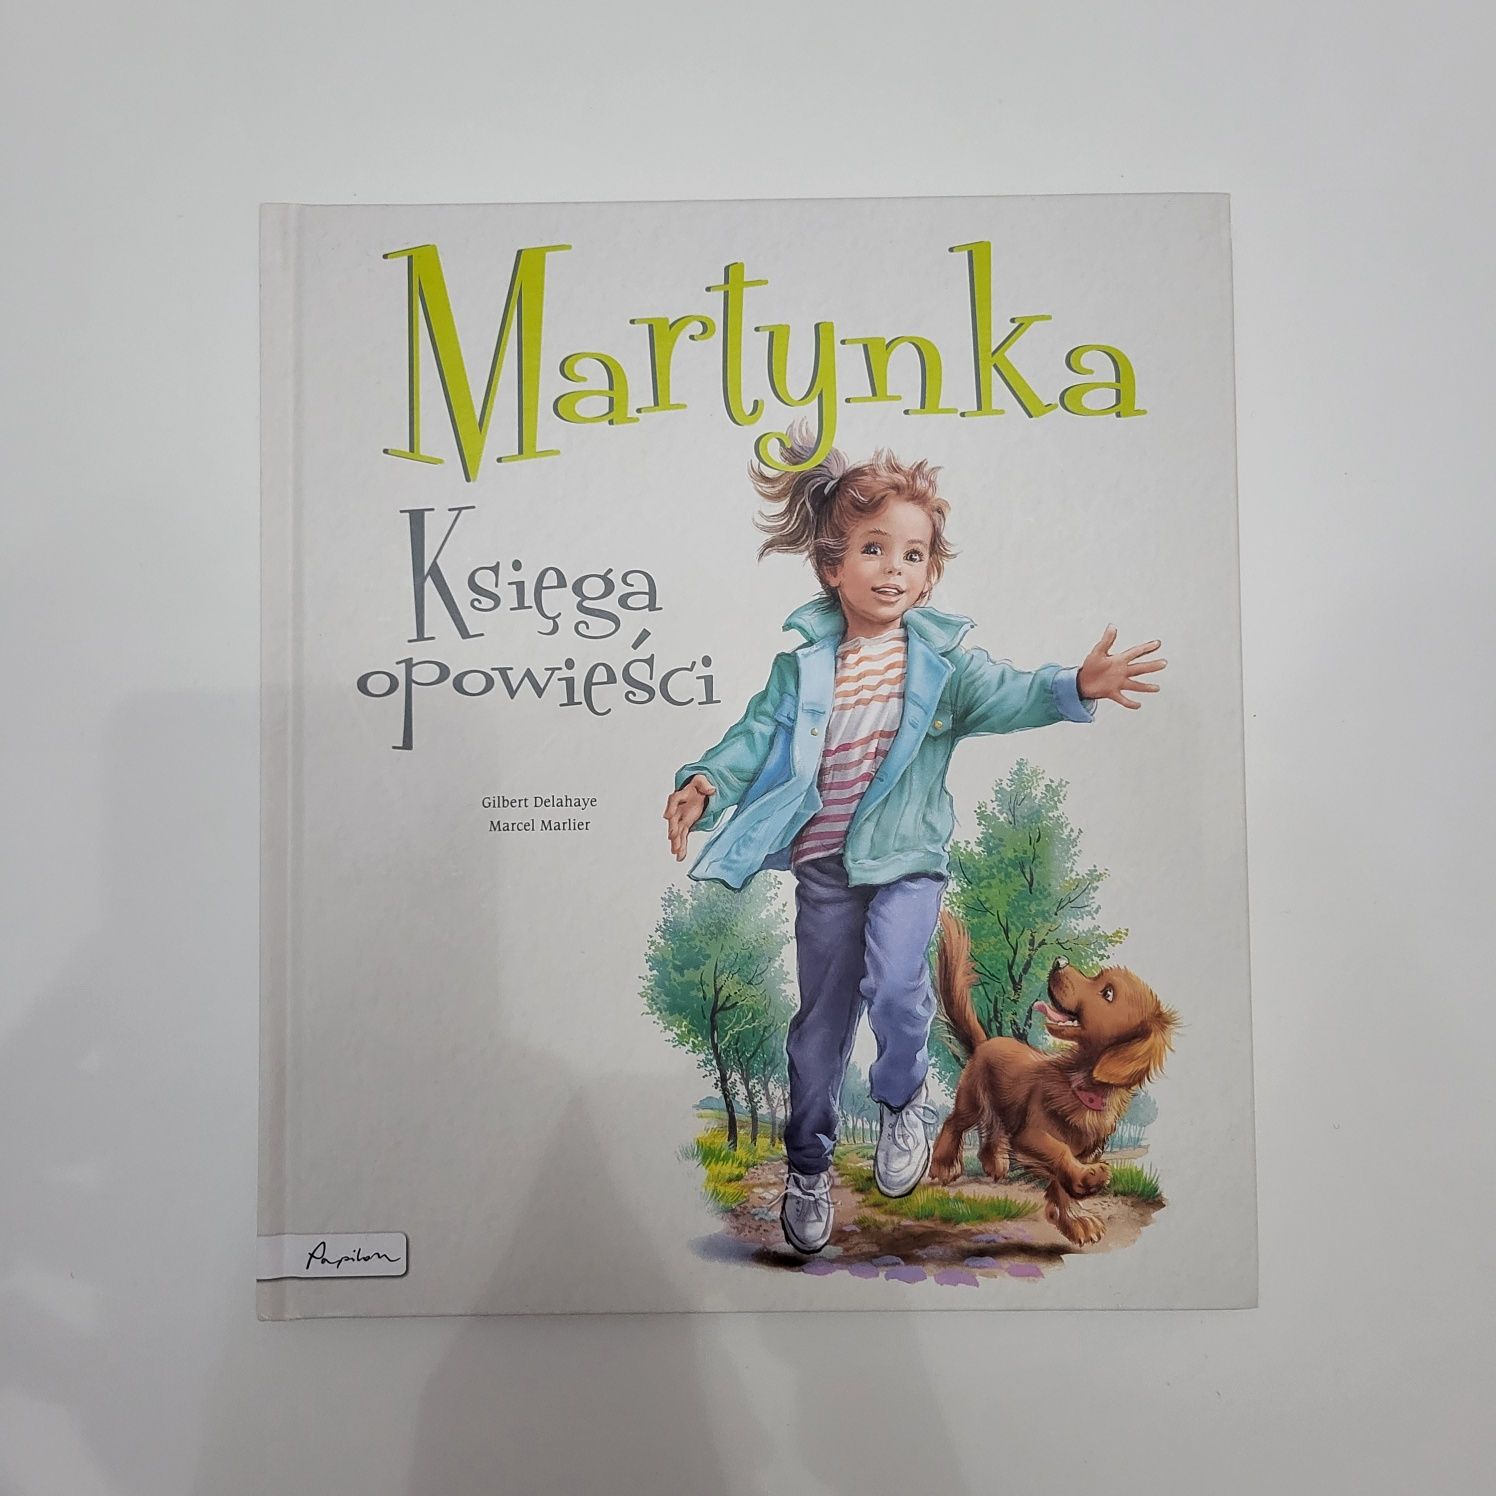 Martynka Księga Opowieści